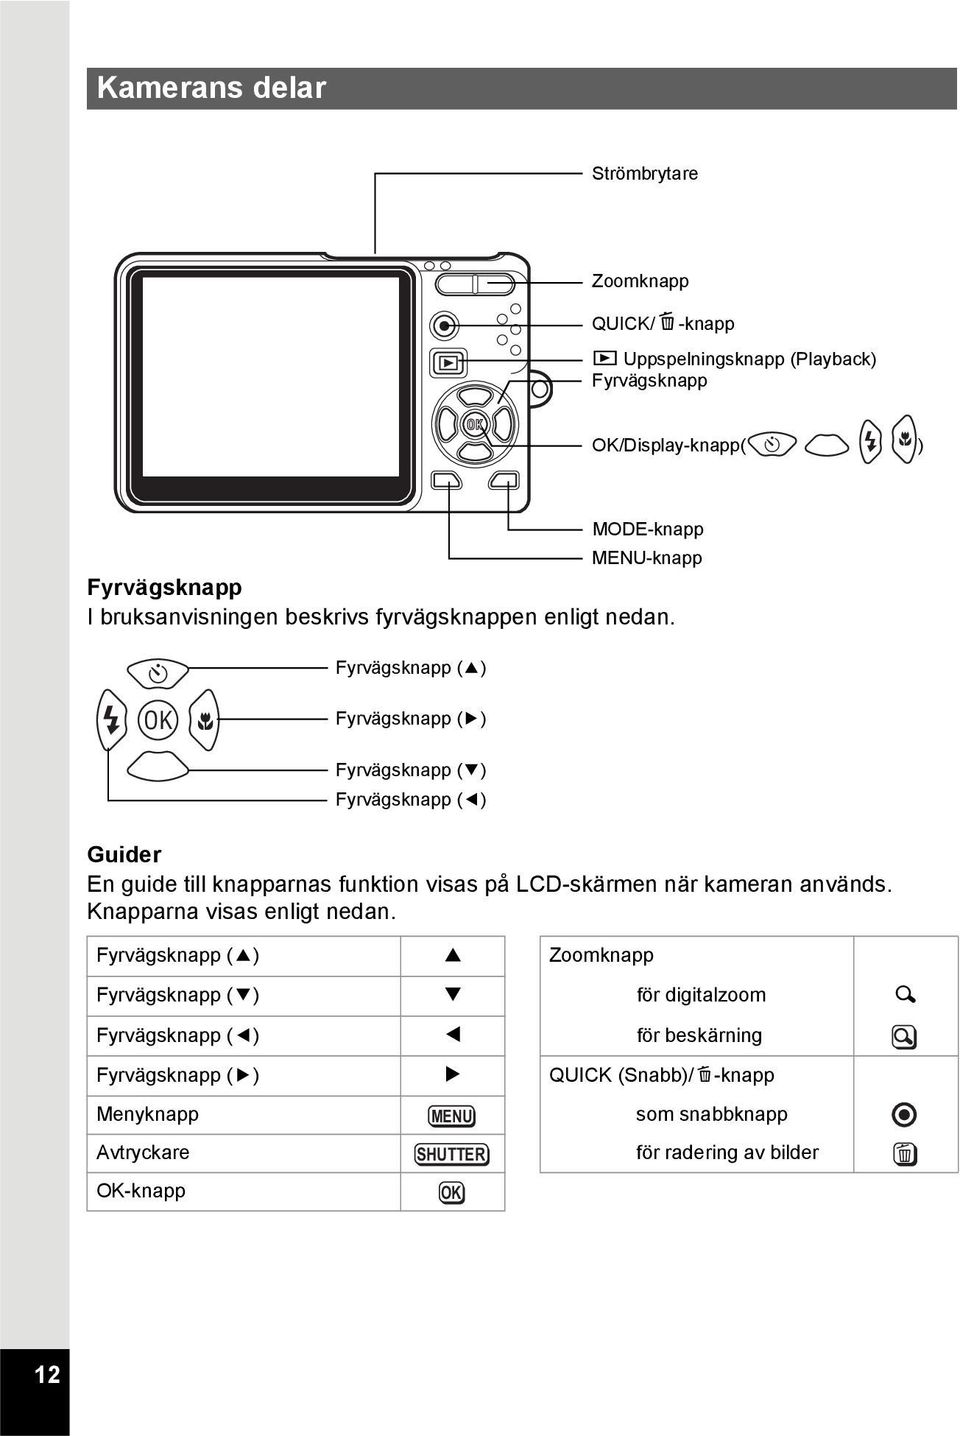 g b q Fyrvägsknapp (2) Fyrvägsknapp (5) Fyrvägsknapp (3) Fyrvägsknapp (4) Guider En guide till knapparnas funktion visas på LCD-skärmen när kameran används.